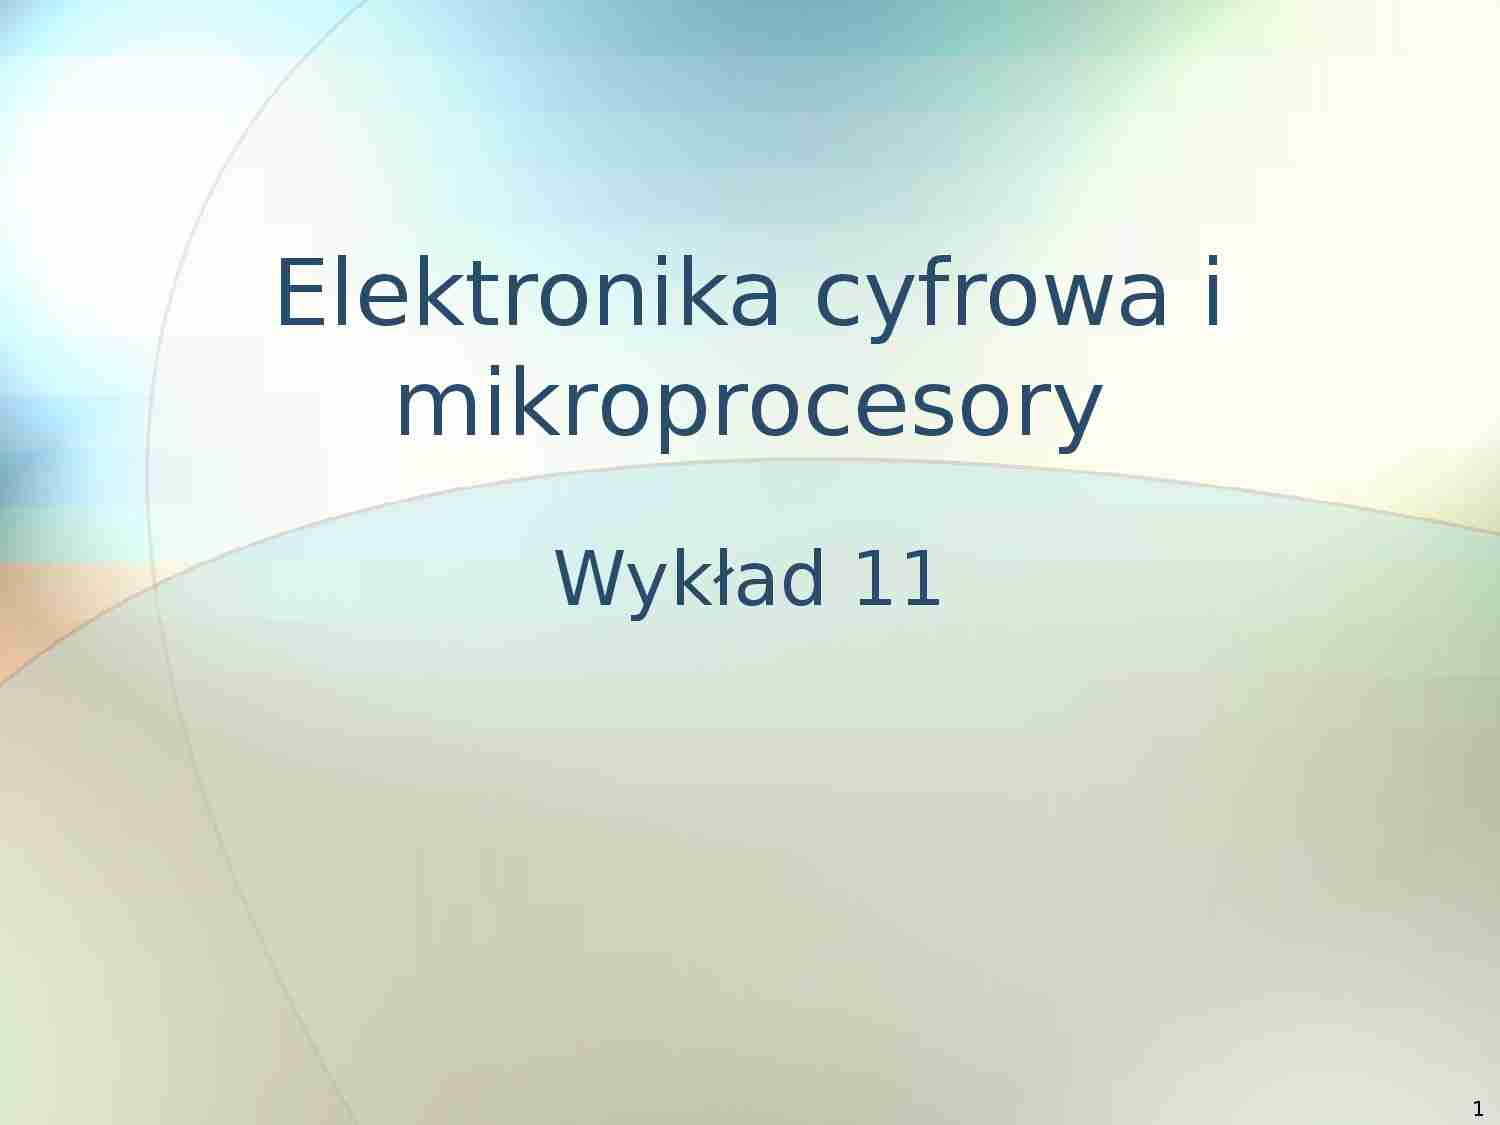 Elektronika cyfrowa i mikroprocesory - wyklad 11 - strona 1